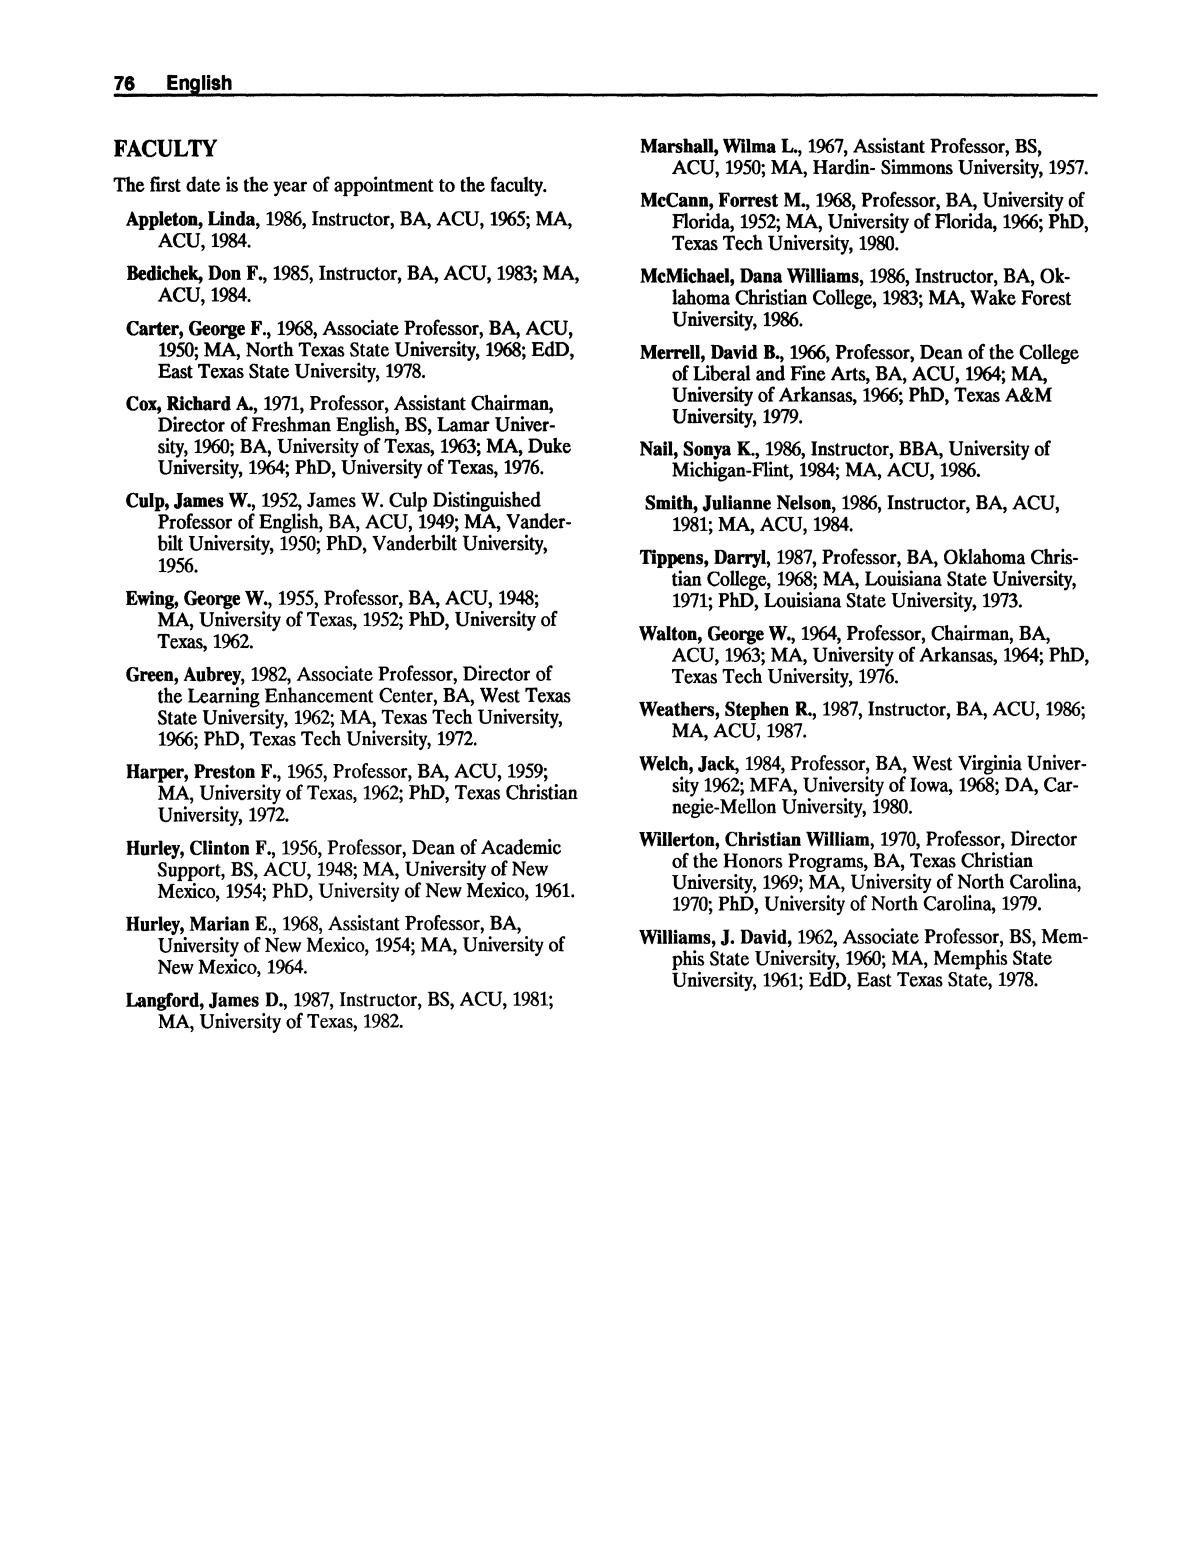 Catalog of Abilene Christian University, 1988-1989
                                                
                                                    76
                                                